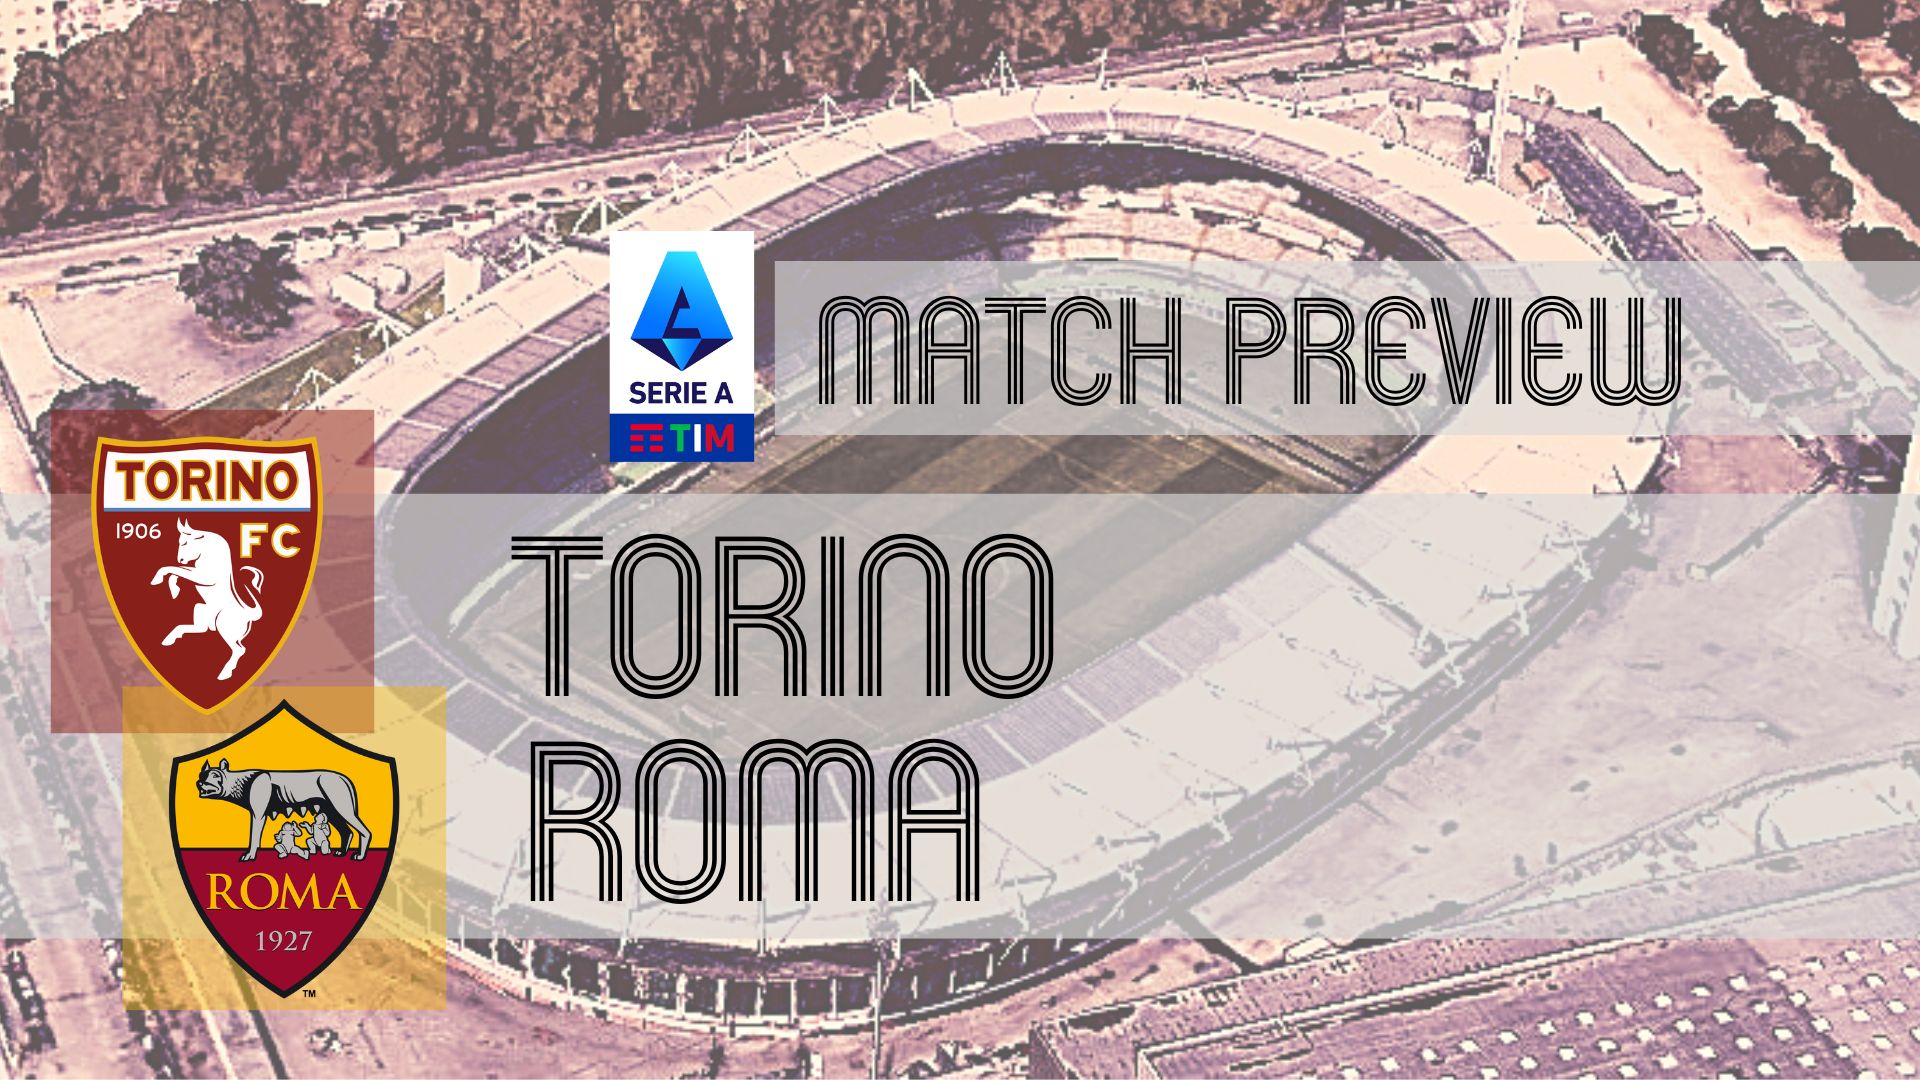 Torino vs Cagliari Predictions, Tips & Match Preview